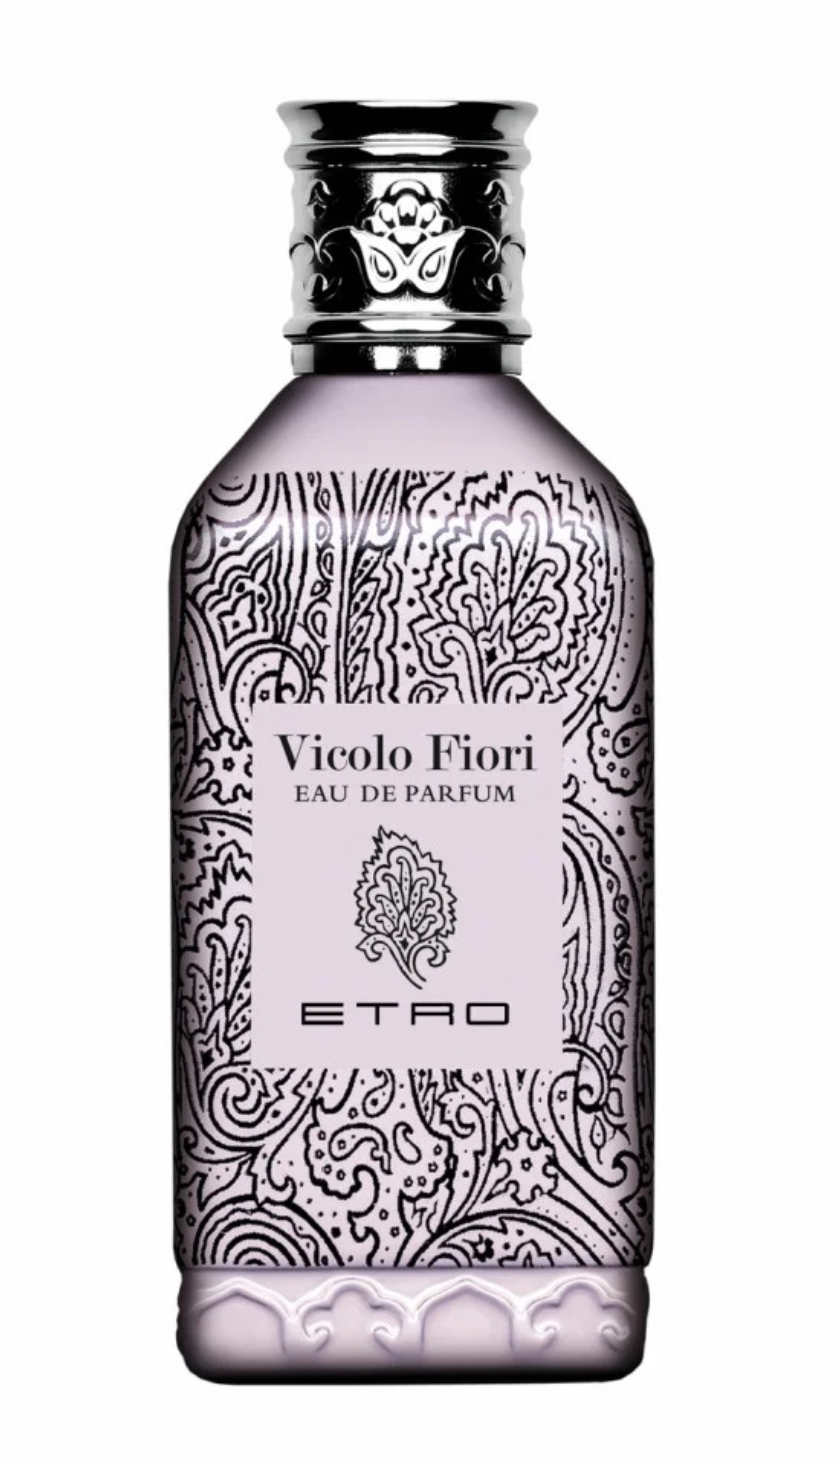 Vicolo Fiori Eau de Parfum 100 spray deluxe